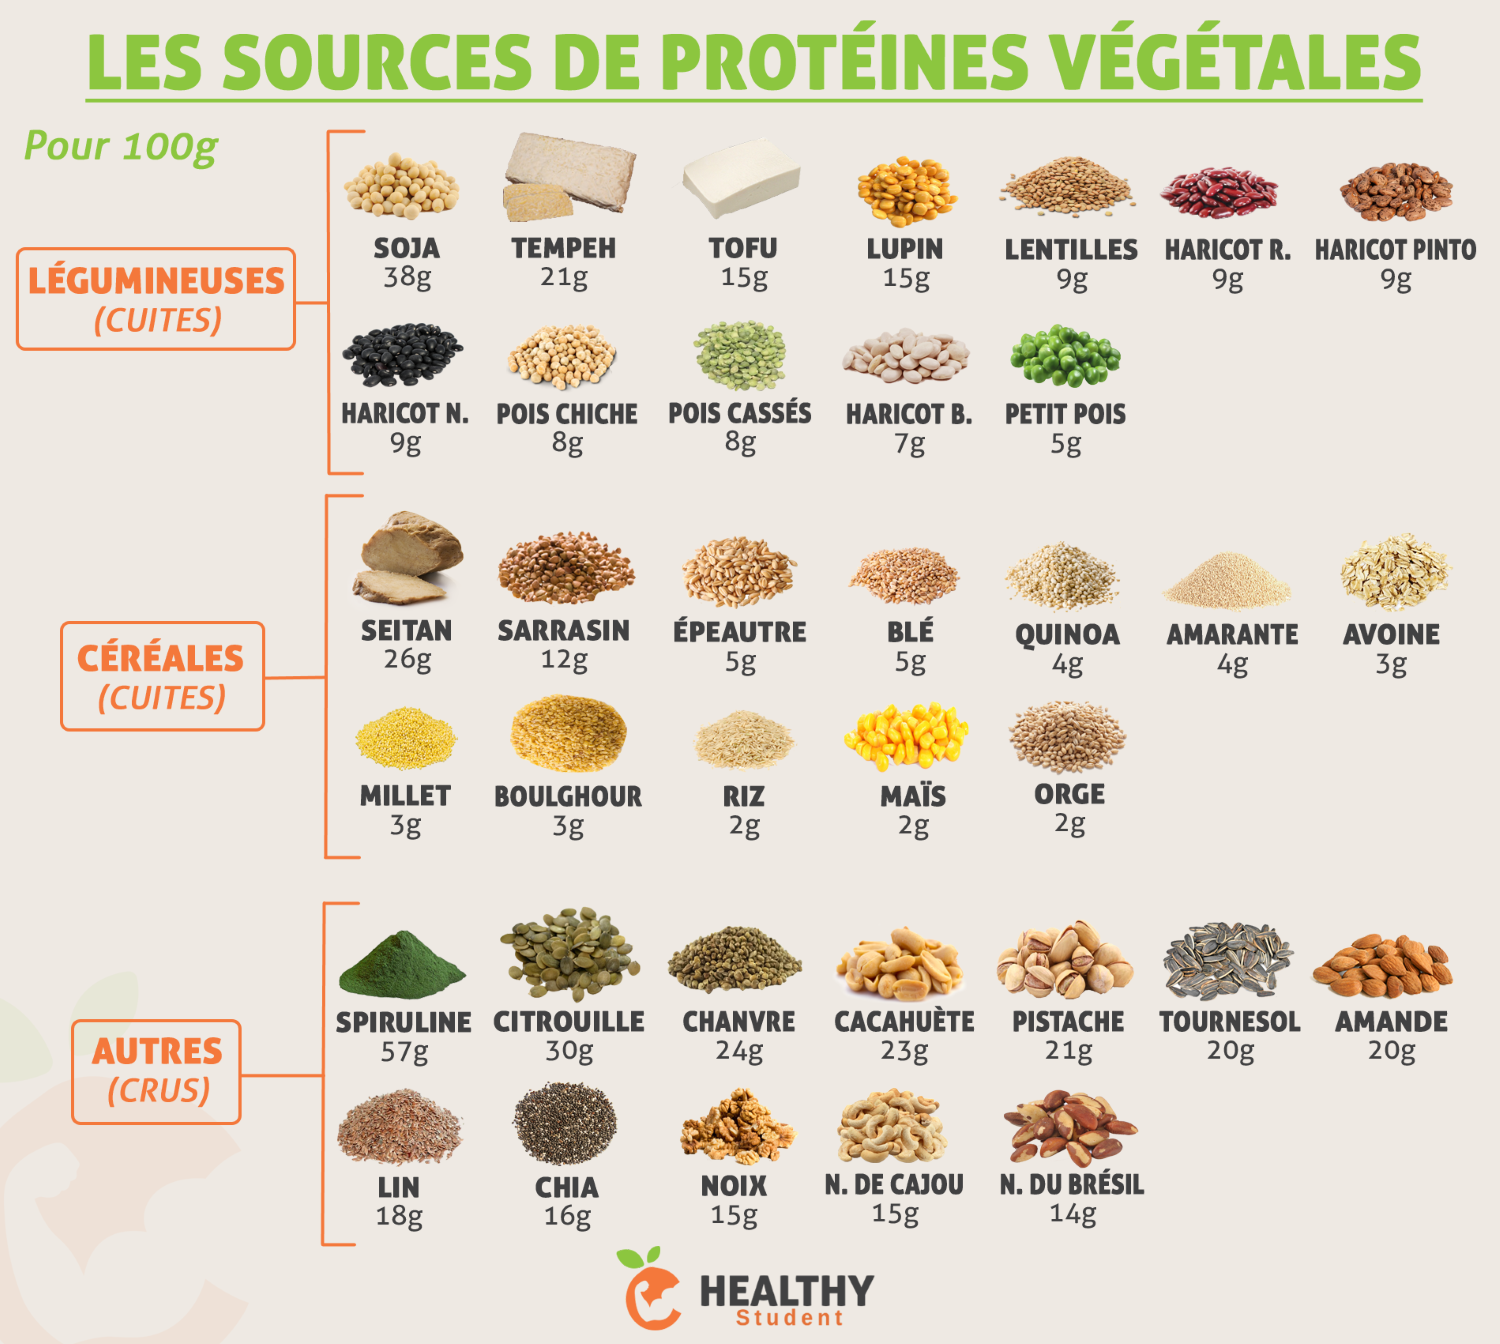 Les sources de protéines végétales